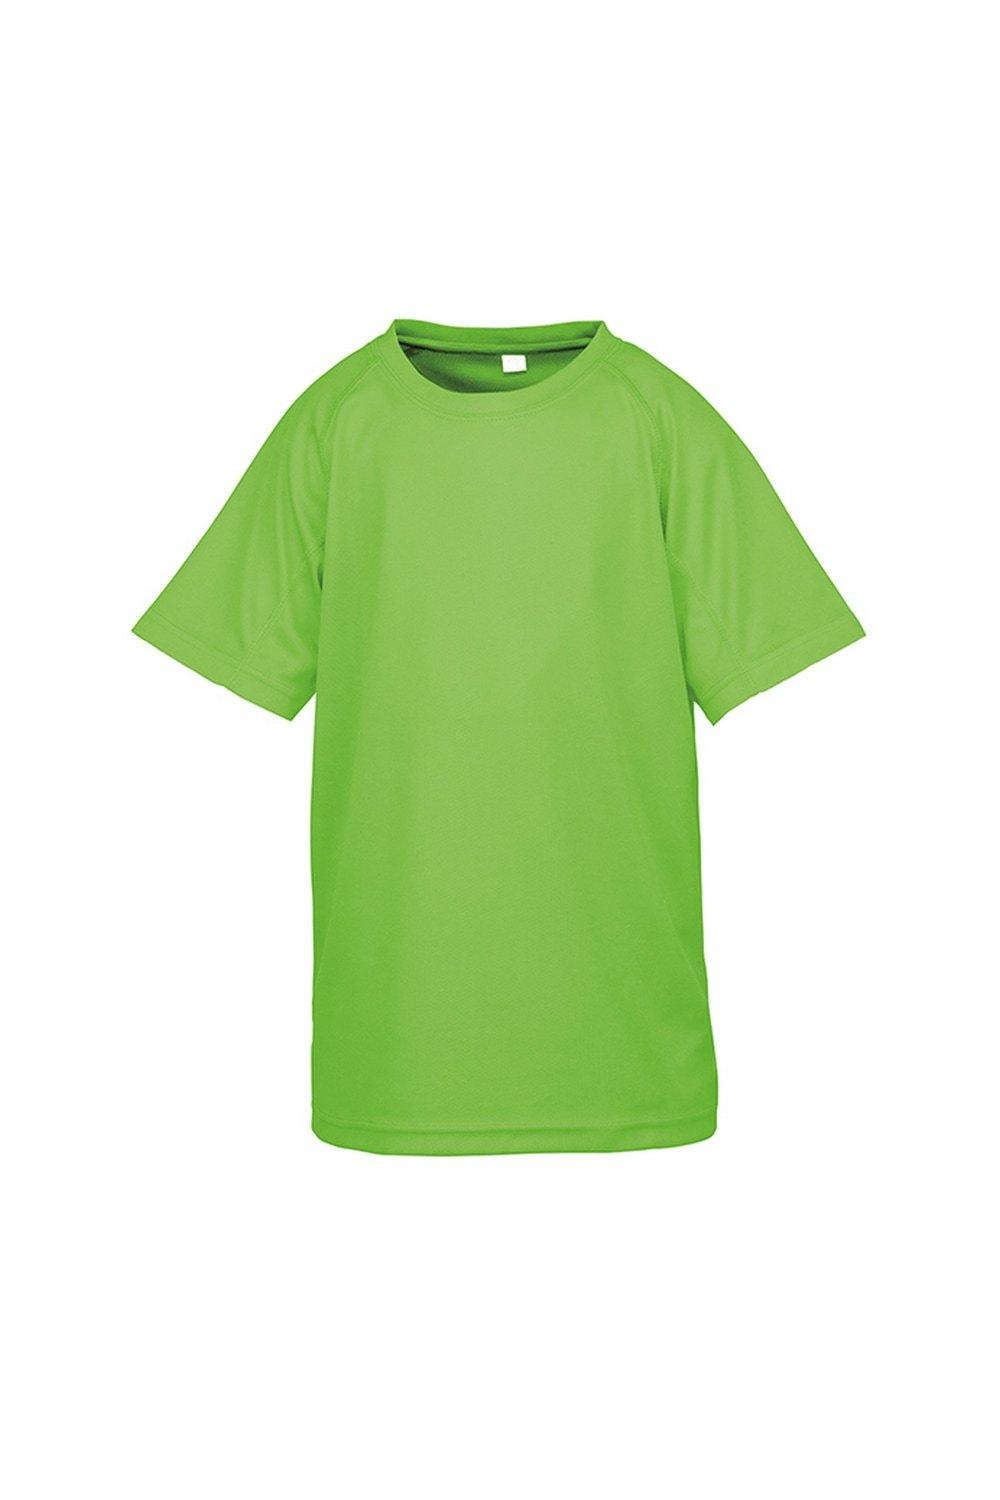 Детская футболка Impact Performance Aircool Spiro, зеленый женская футболка с коротким рукавом быстросохнущая дышащая облегающая футболка для гольфа